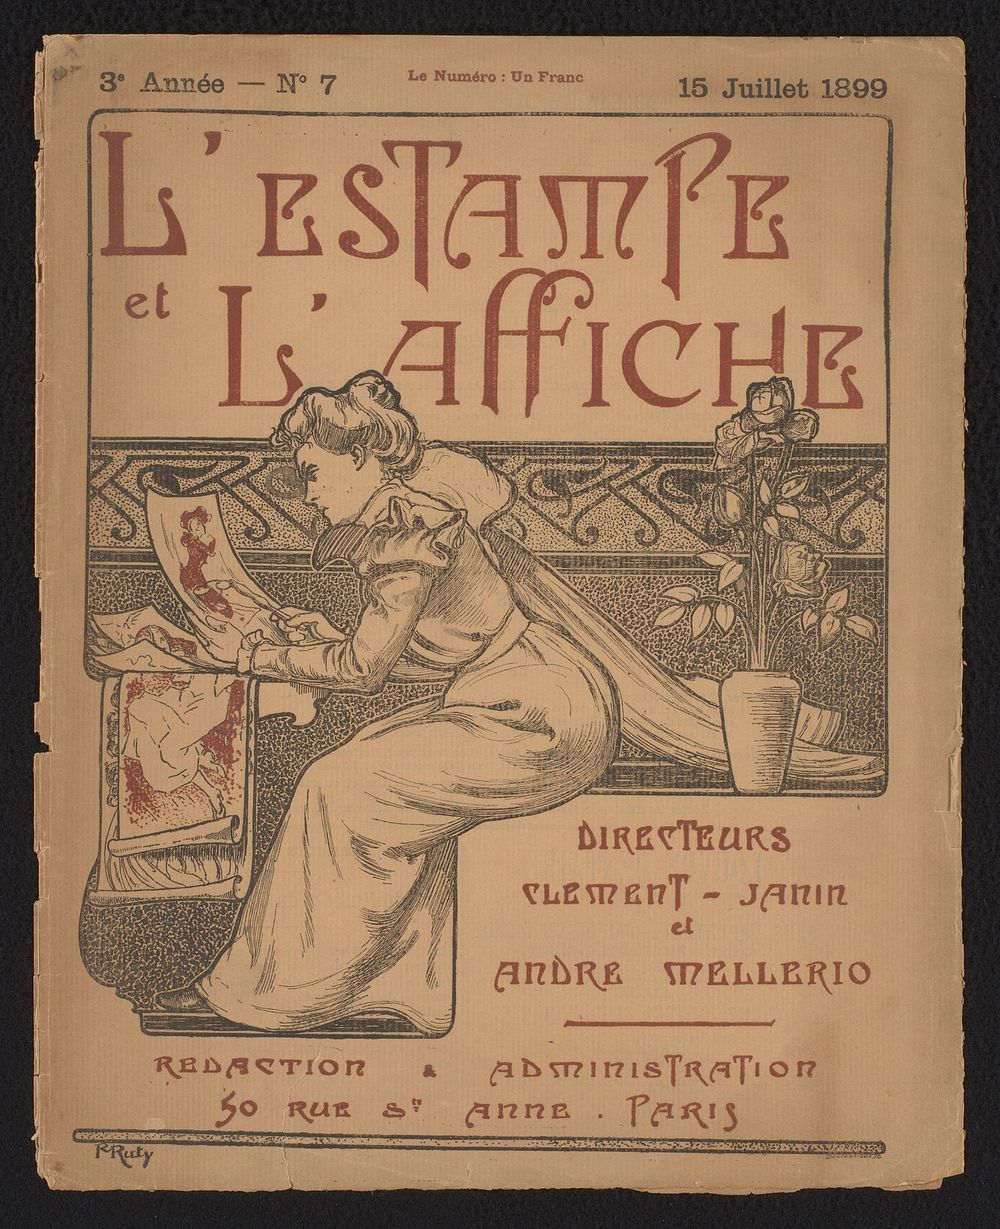 Omslag voor: L'estampe et l'affiche 3 (1899), nr. 7 (1899) by Ducourtioux and Paul Ruty